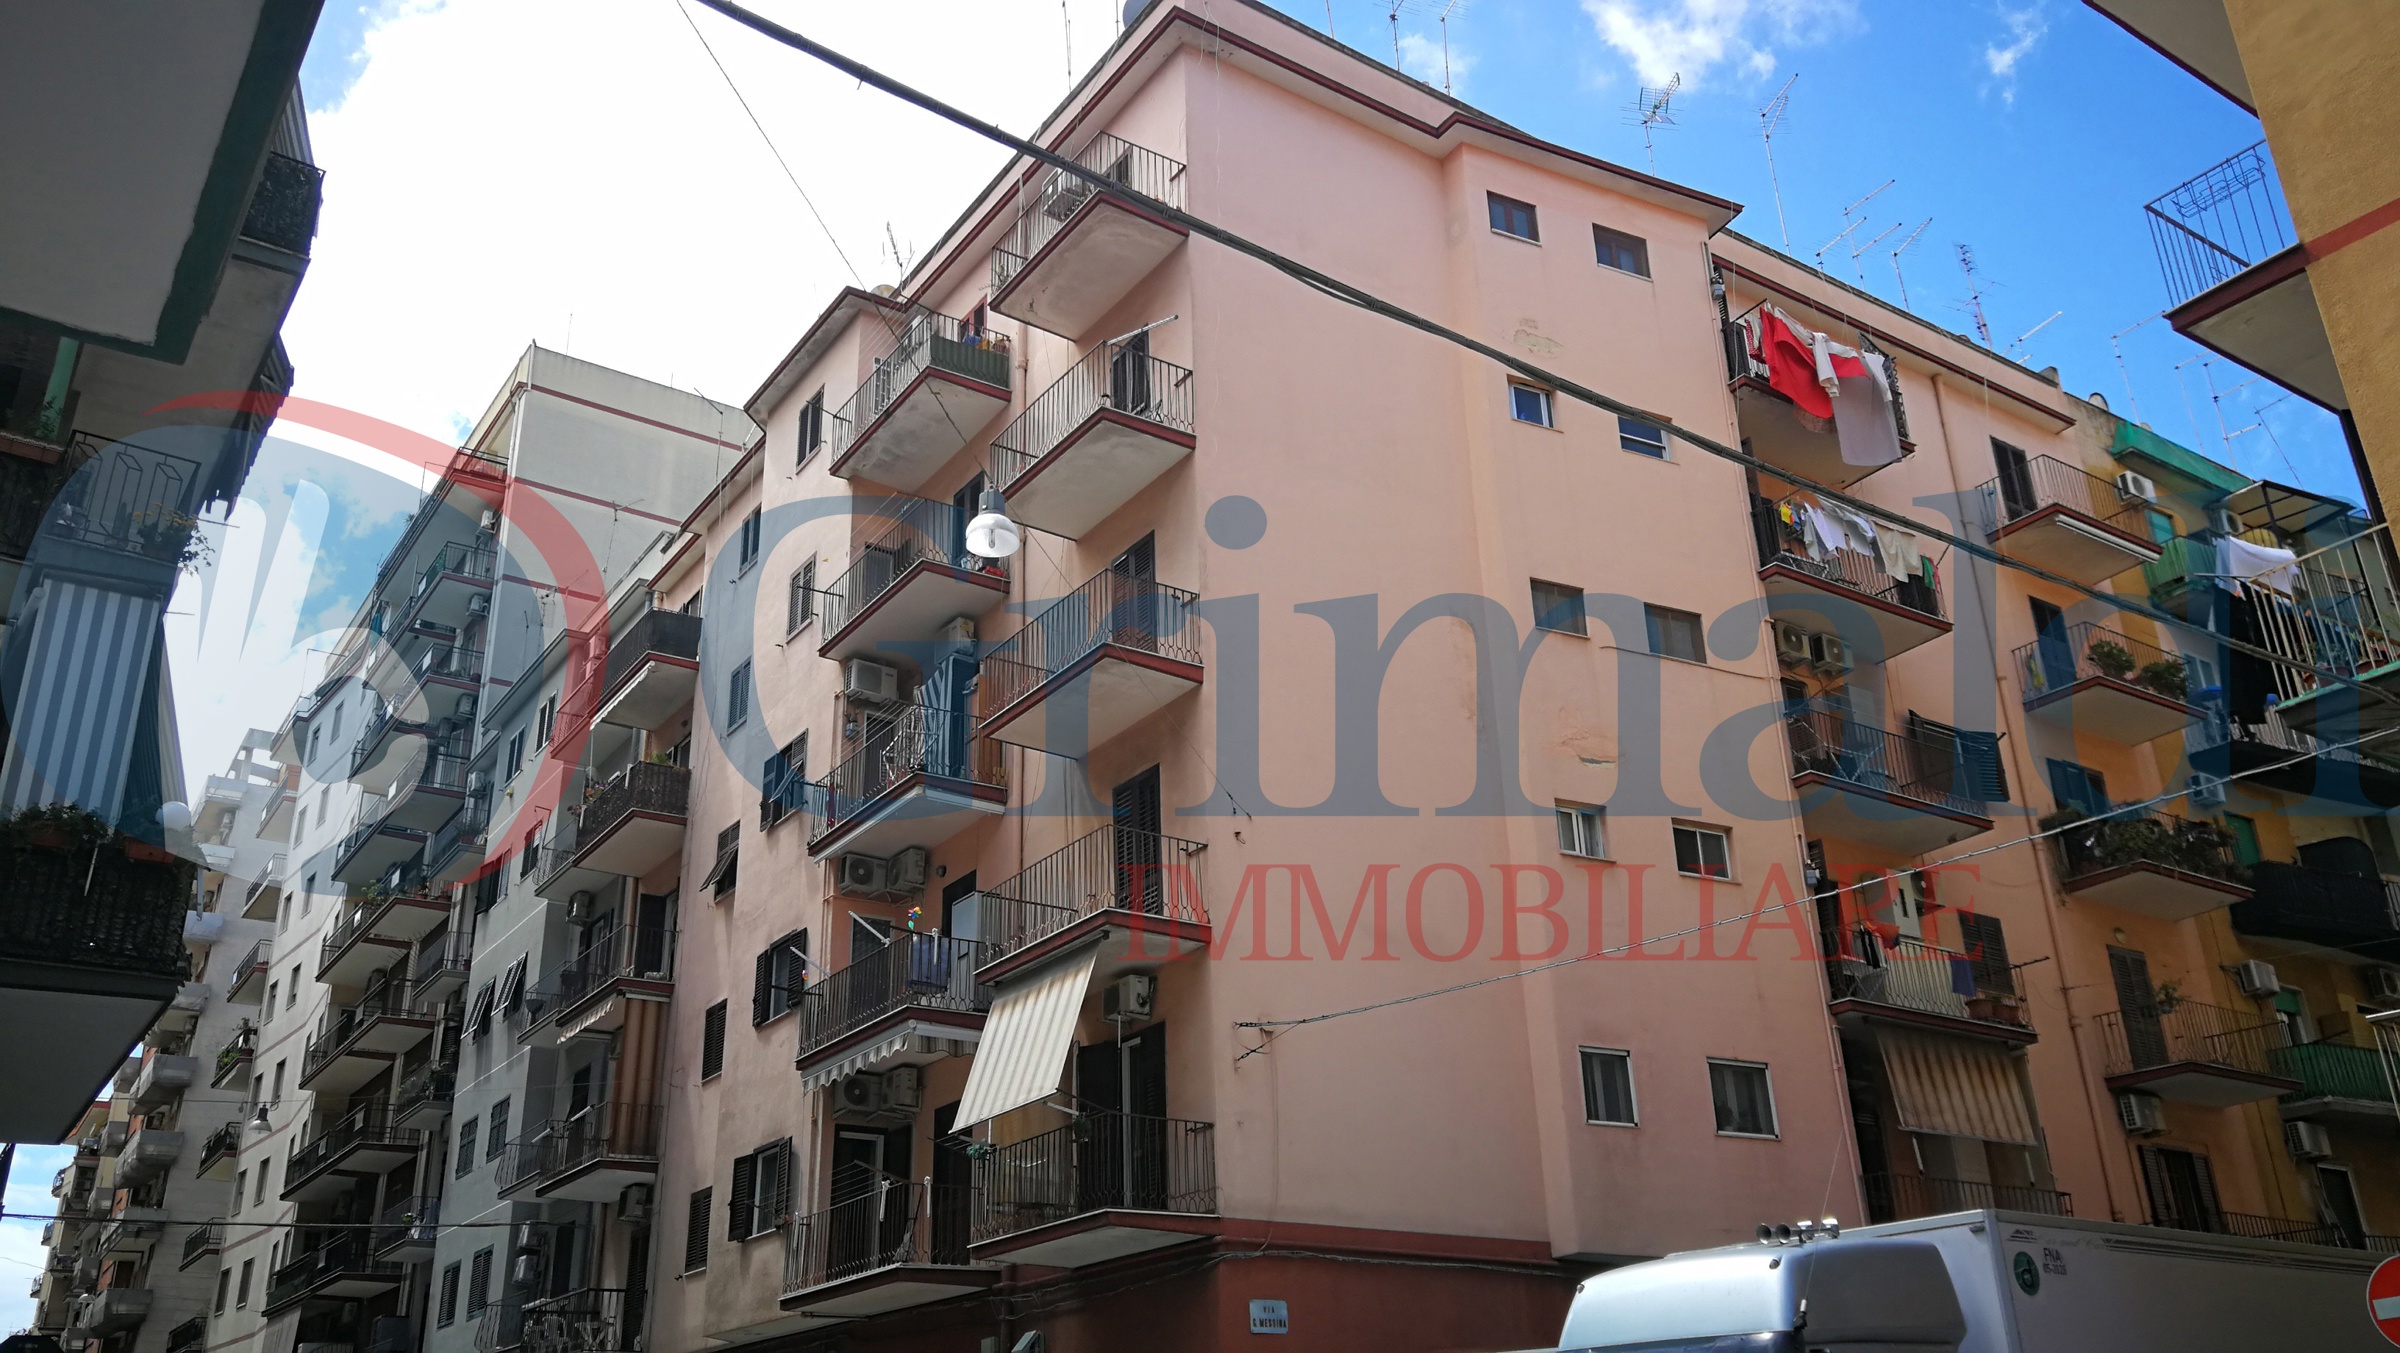 Appartamento in vendita a Taranto, 3 locali, prezzo € 75.000 | PortaleAgenzieImmobiliari.it